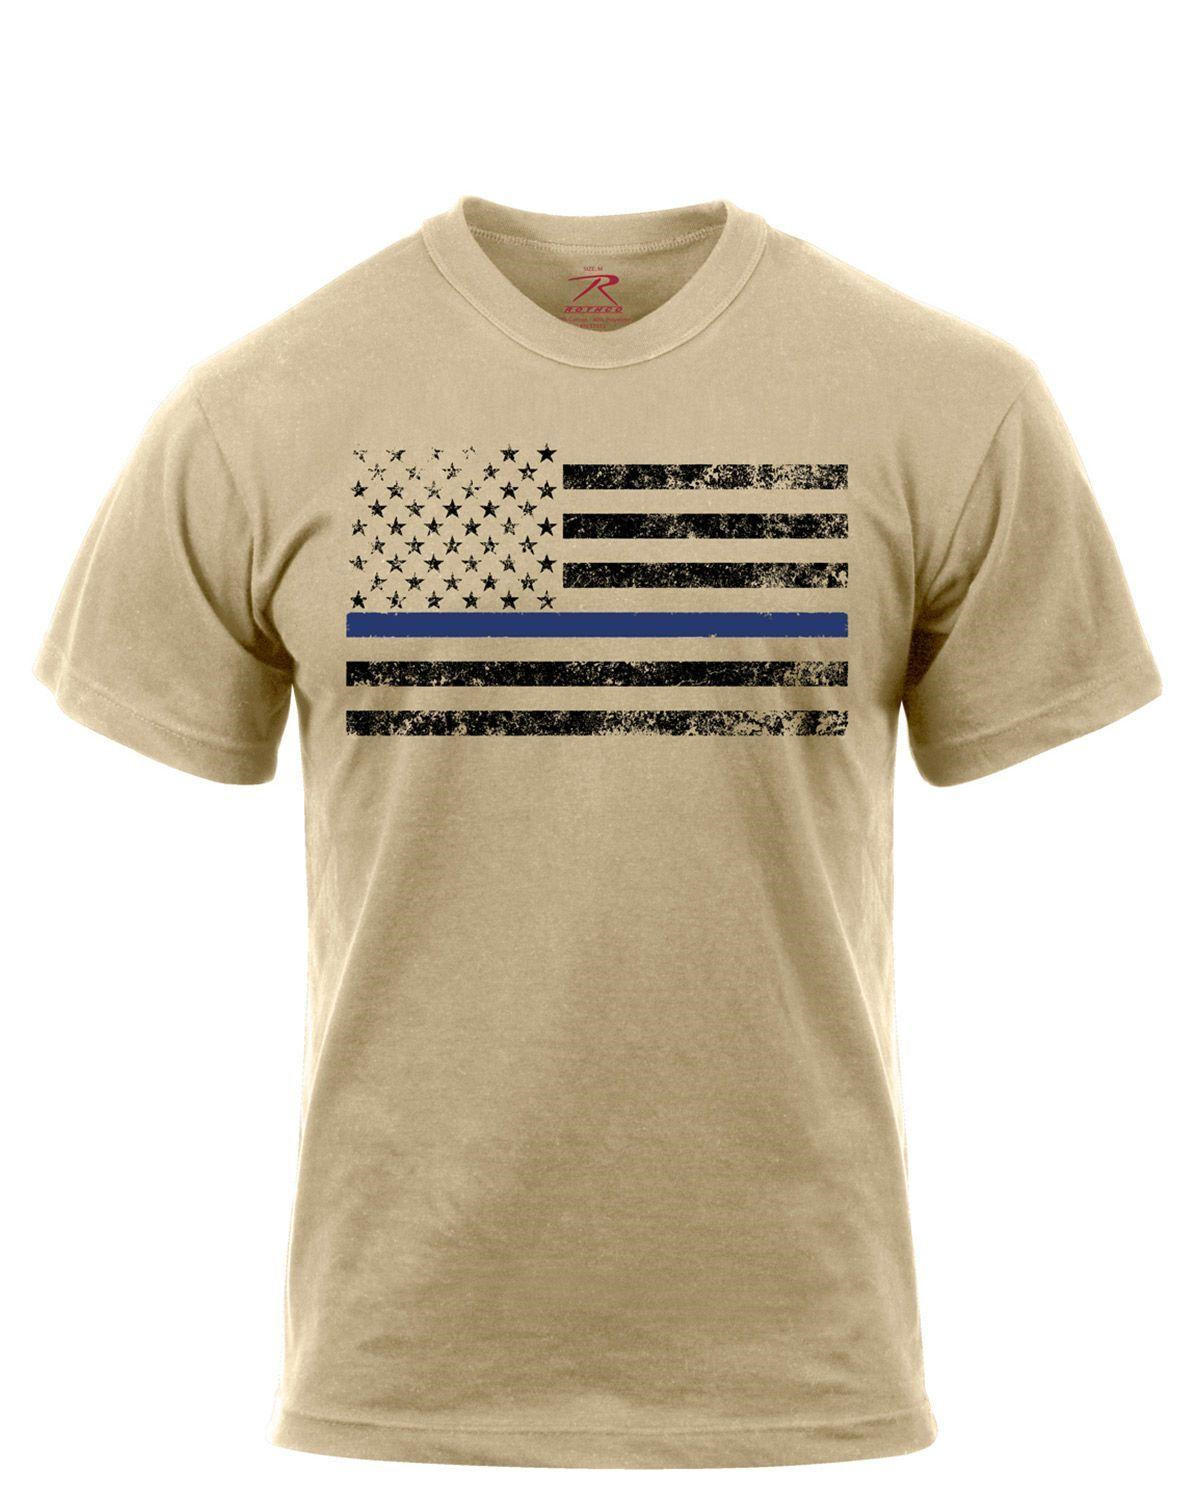 Rothco T-Shirt - Thin Blue Line-Flag (Desert Sand m. Sort Flag, L)